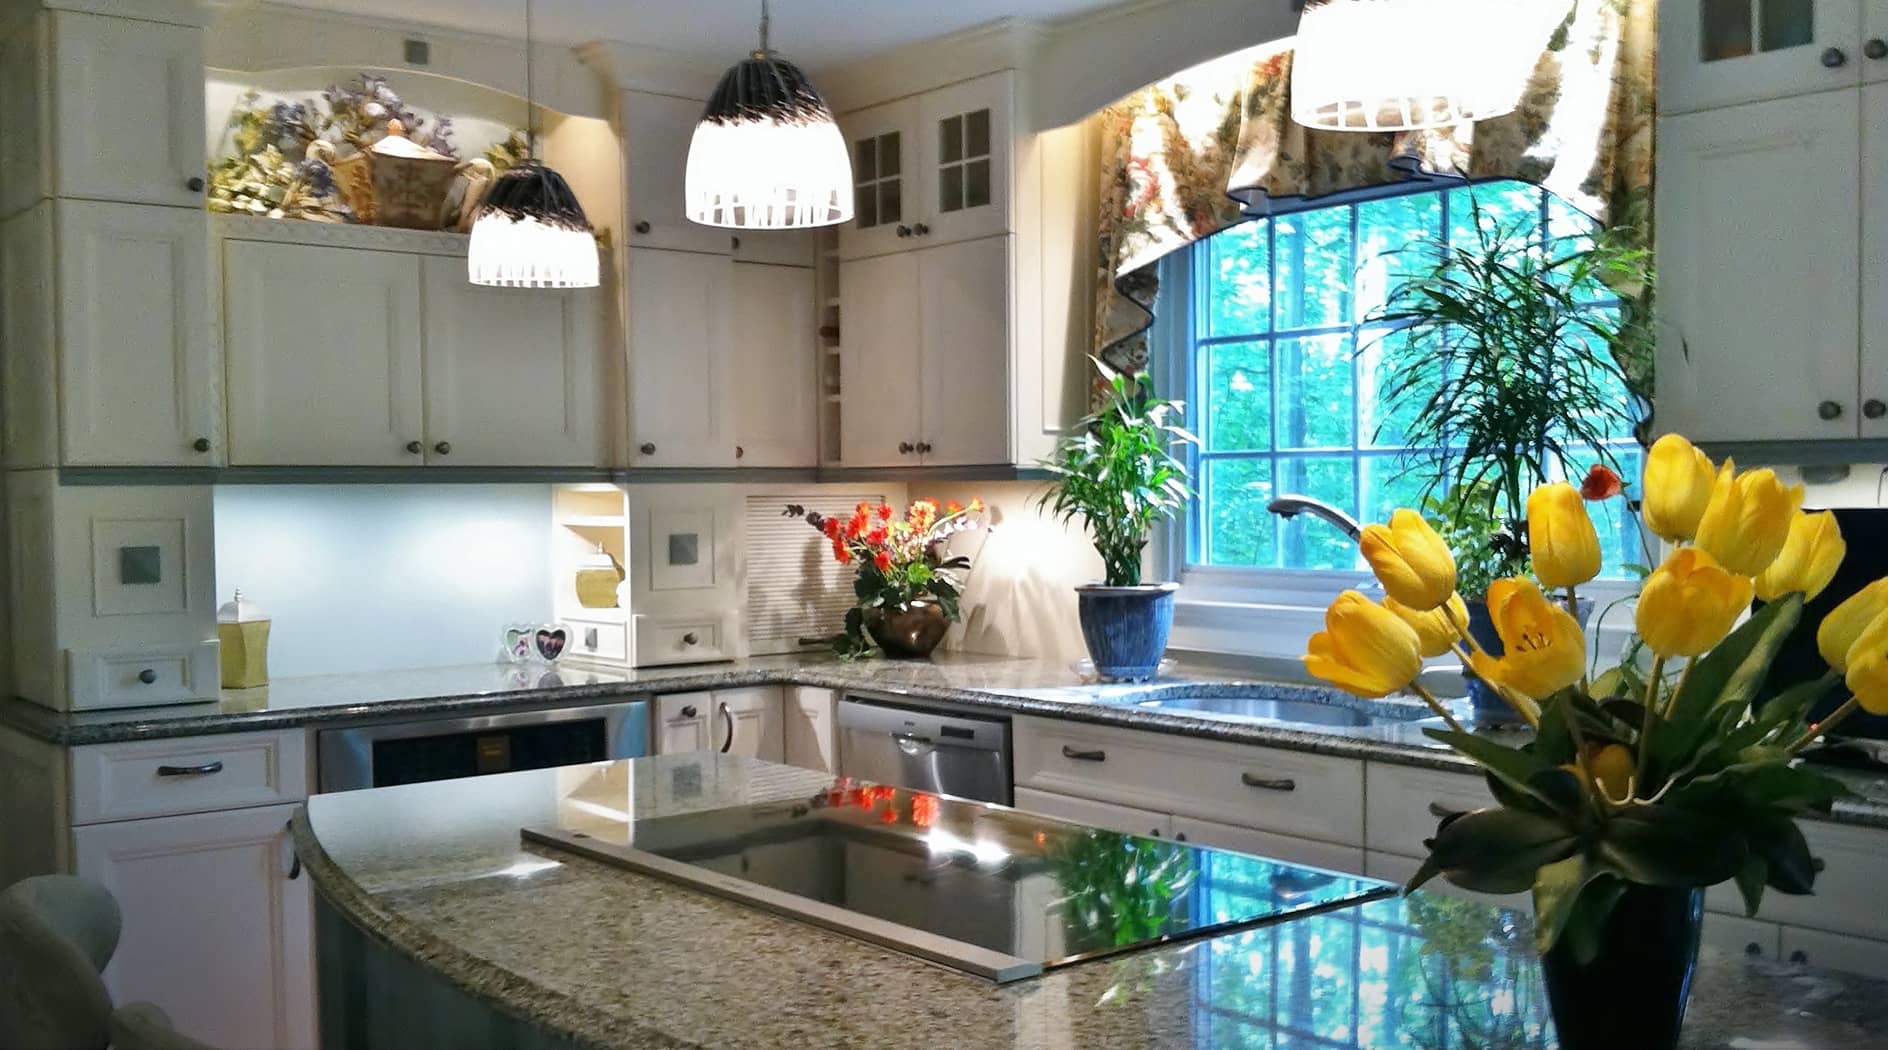 Kitchen Interior Design and Planning, Cabinet Design, Lighting, Fairfax, VA